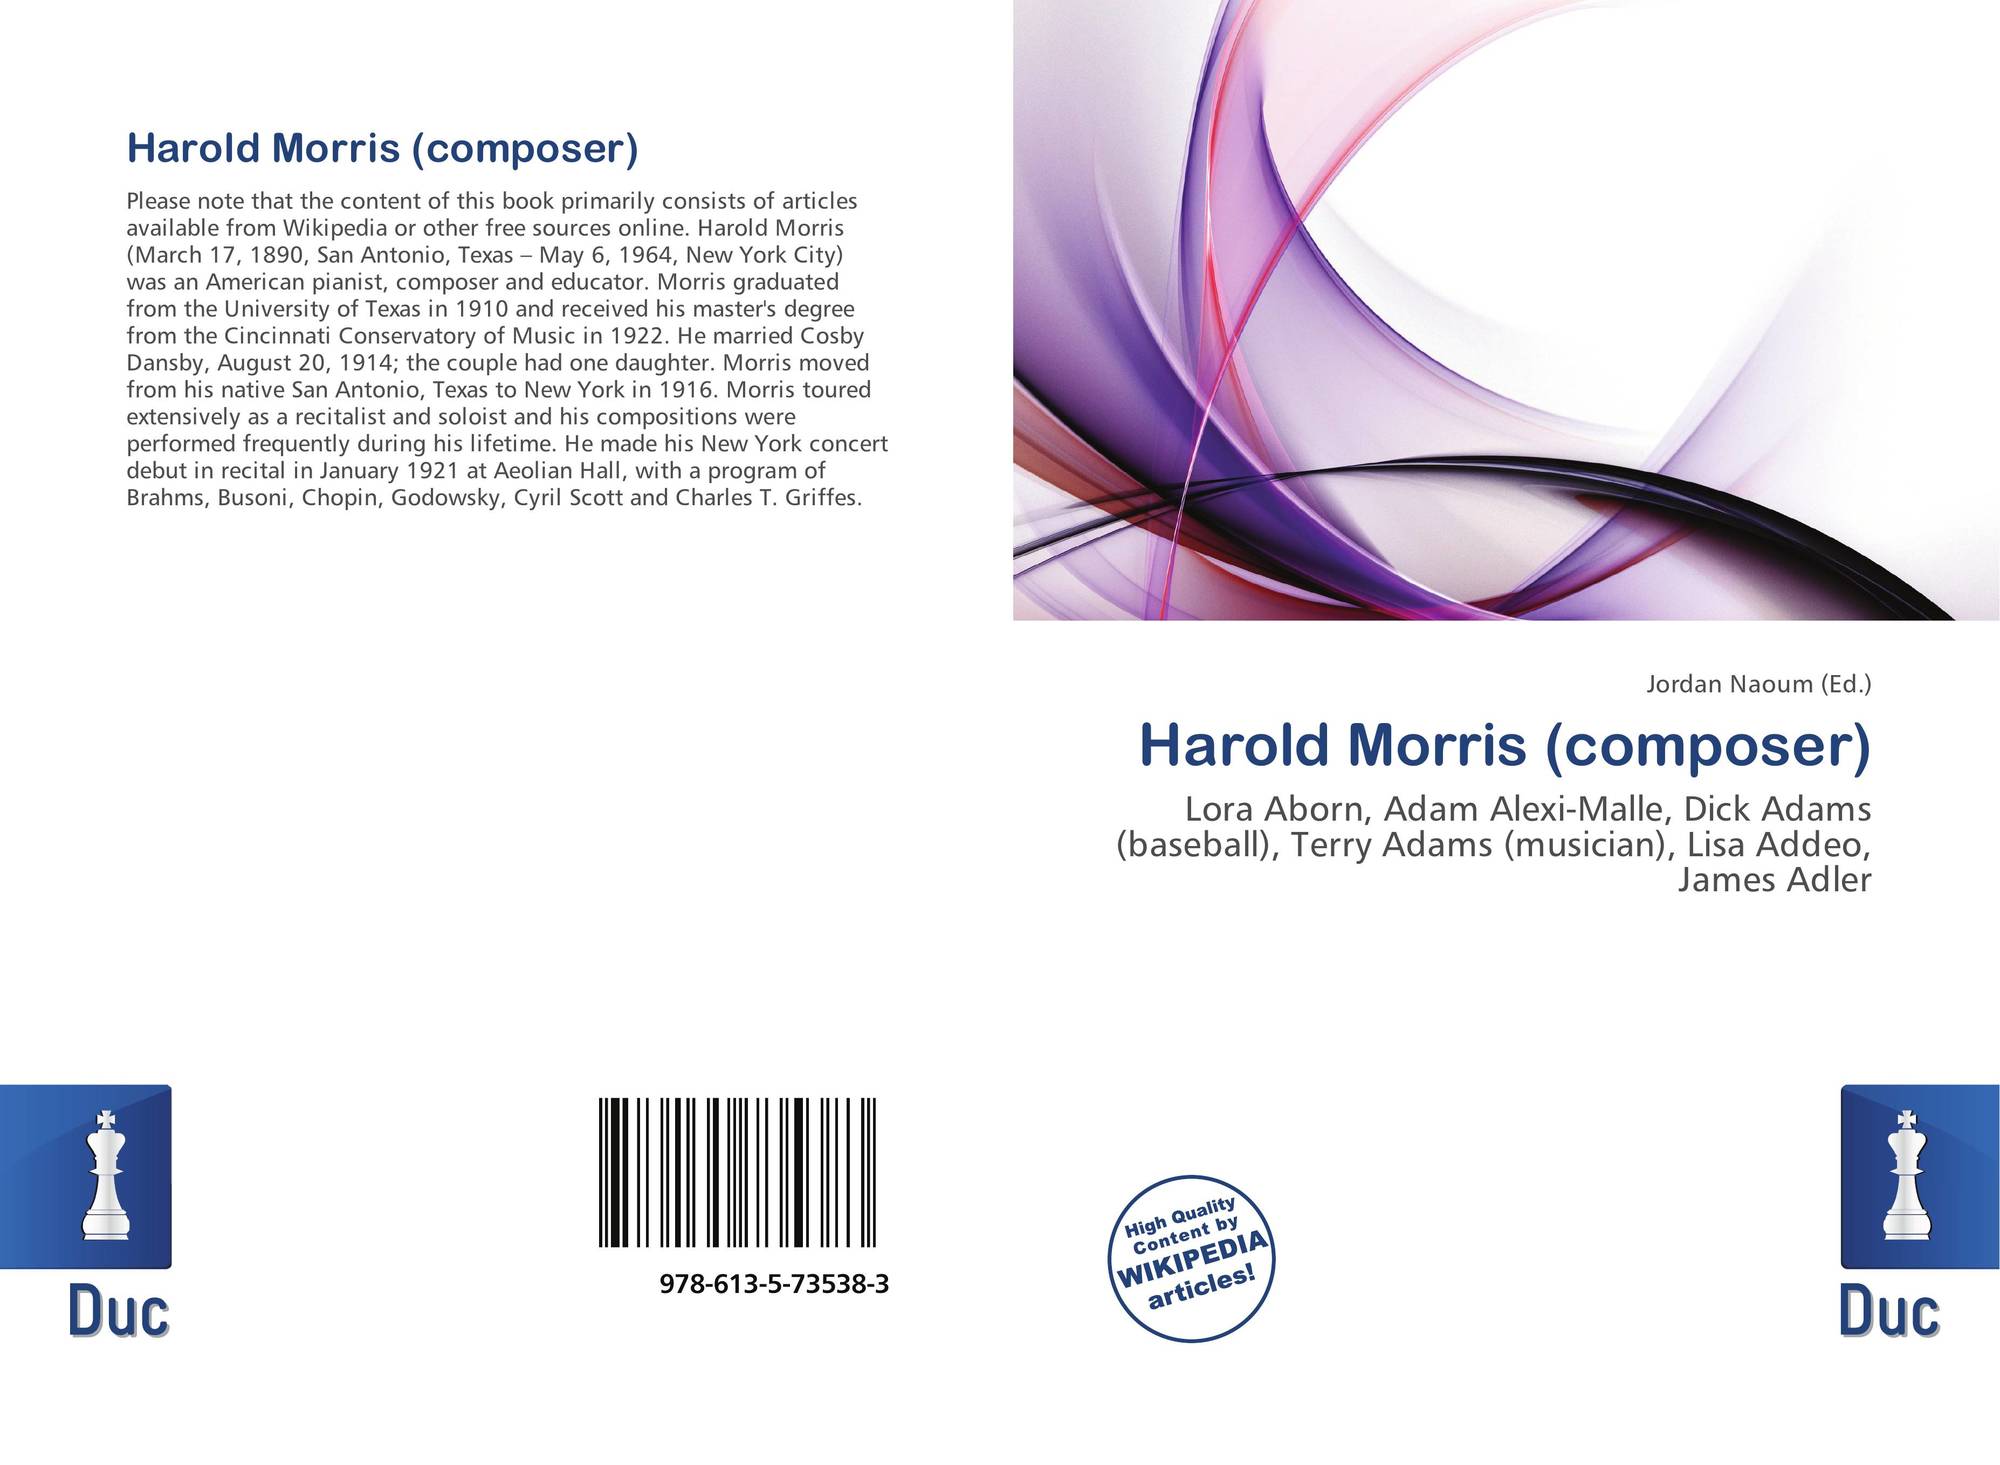 Harold Morris (composer), 978-613-5-73538-3, 6135735381 ,9786135735383